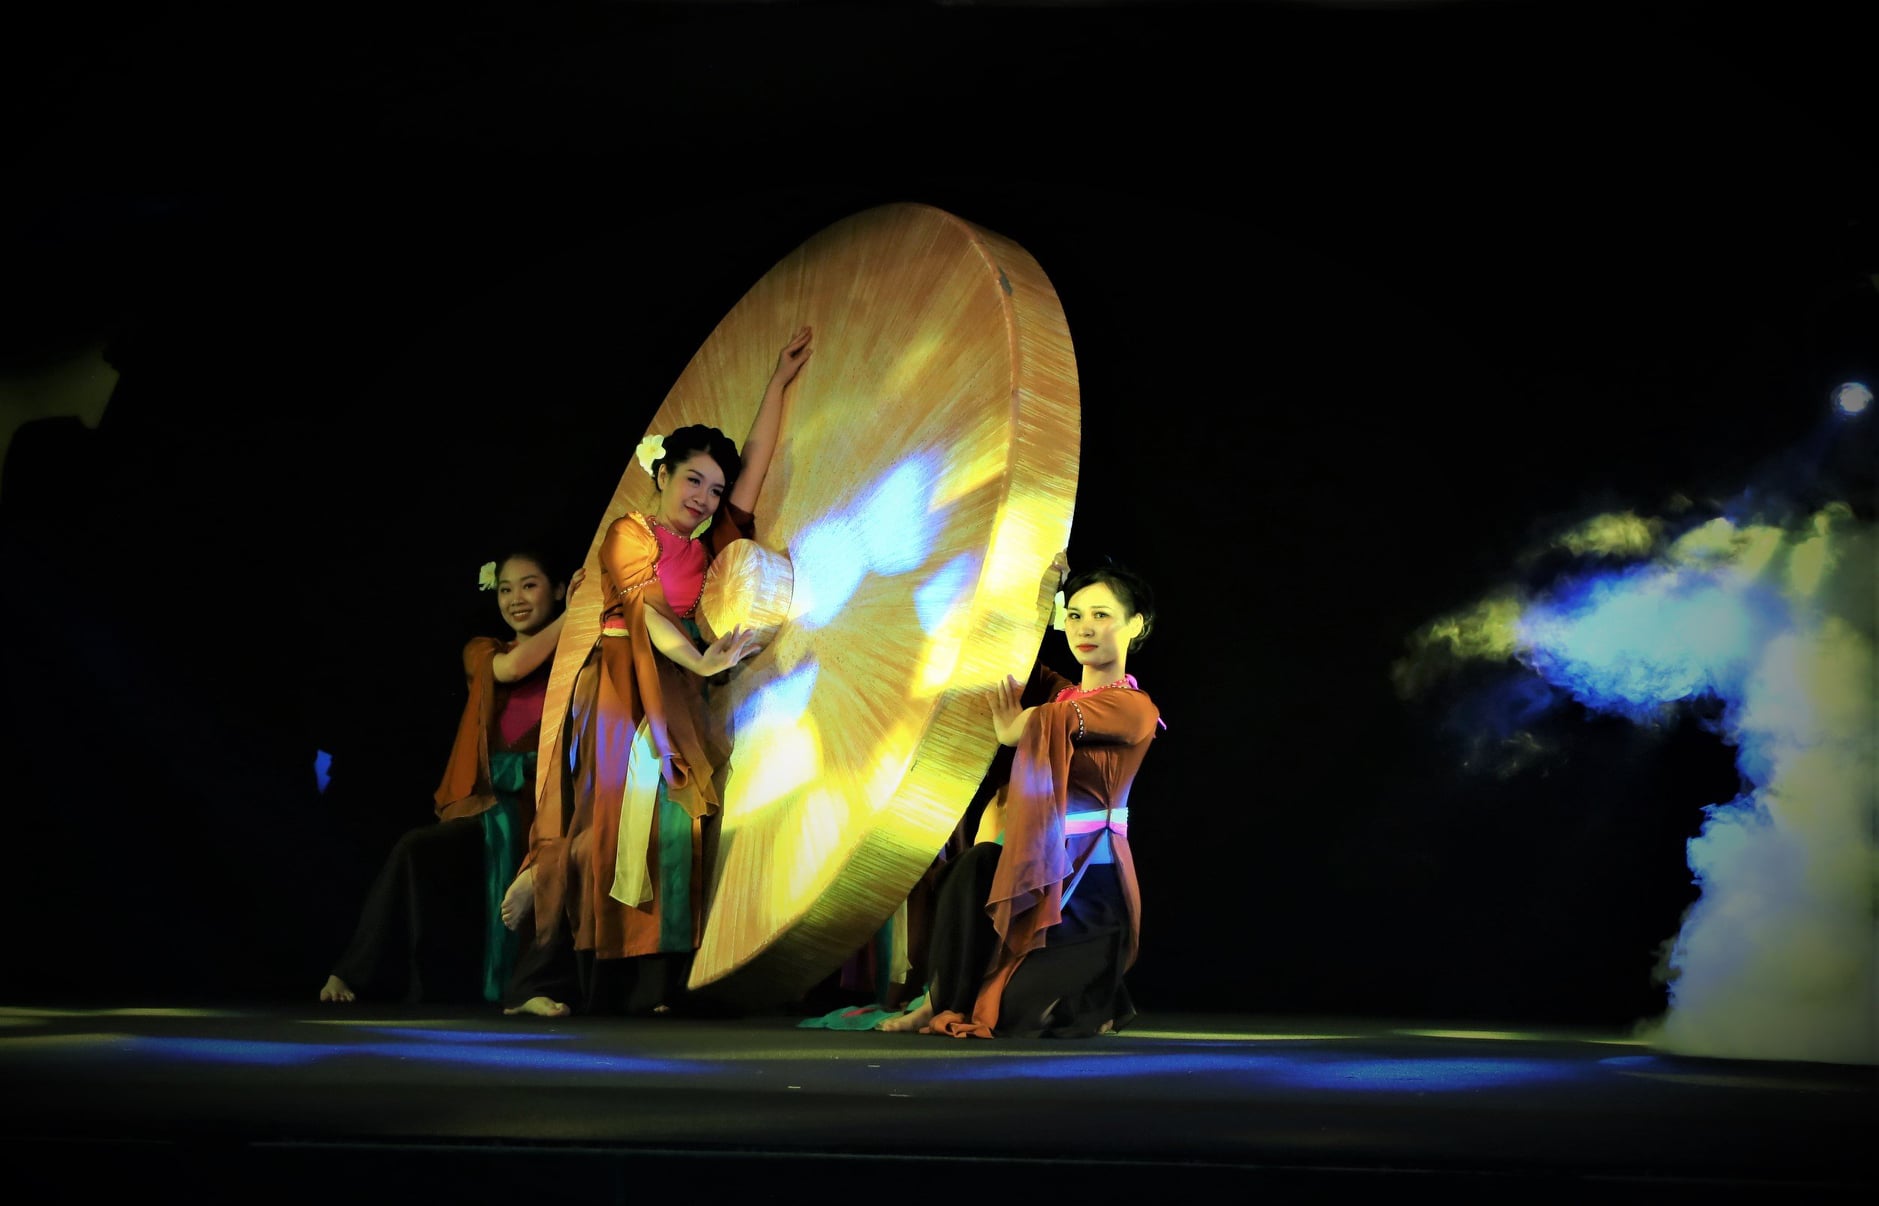 Bàn về hoạt động biểu diễn nghệ thuật truyền thống phục vụ phát triển du lịch tại Thành phố Hà Nội hiện nay - 3